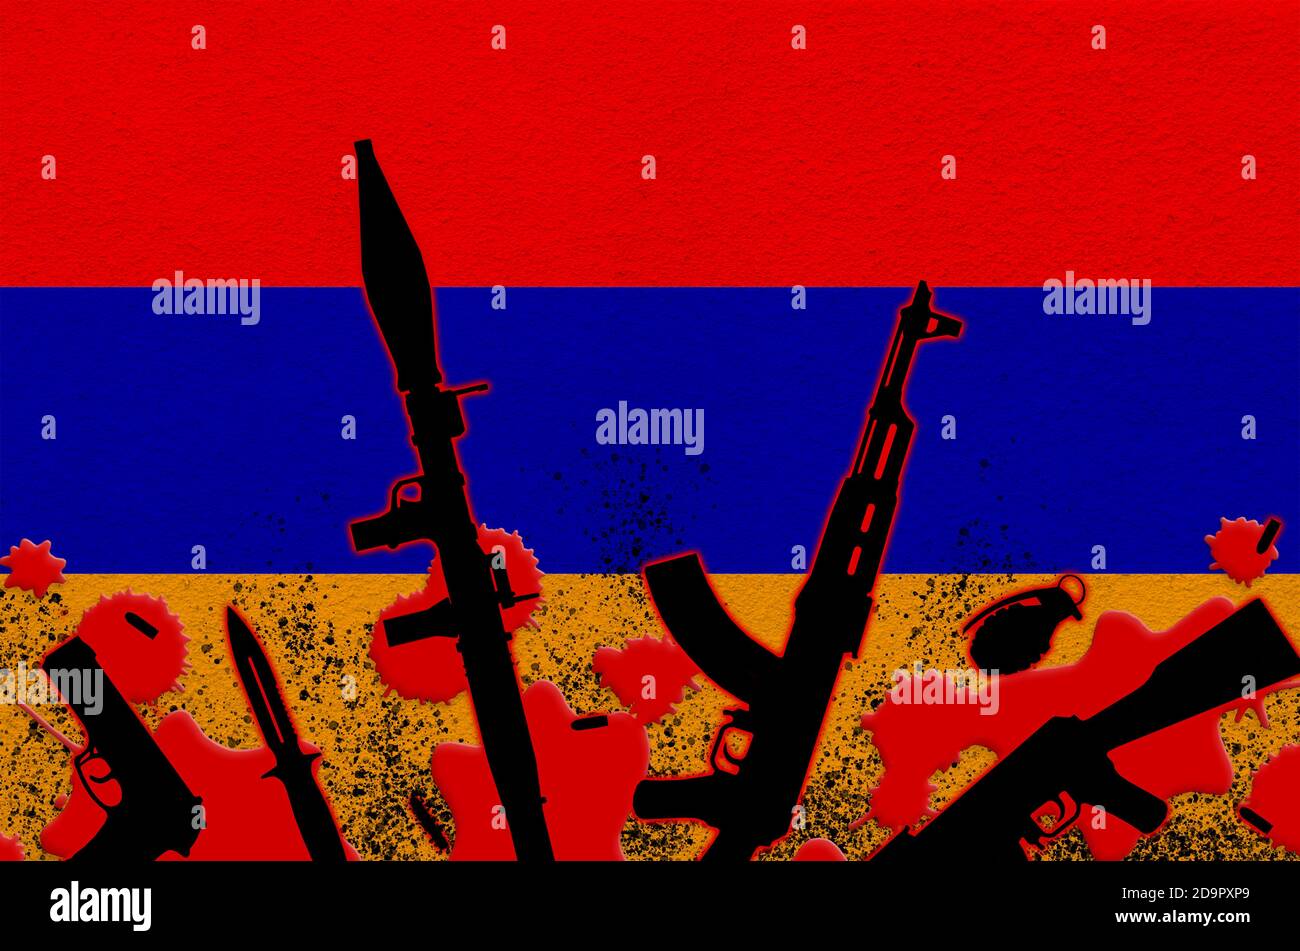 Armenische Flagge und verschiedene Waffen in rotem Blut. Konzept für  Terrorangriffe oder militärische Operationen mit tödlichem Ausgang. Waffenhandel  Stockfotografie - Alamy